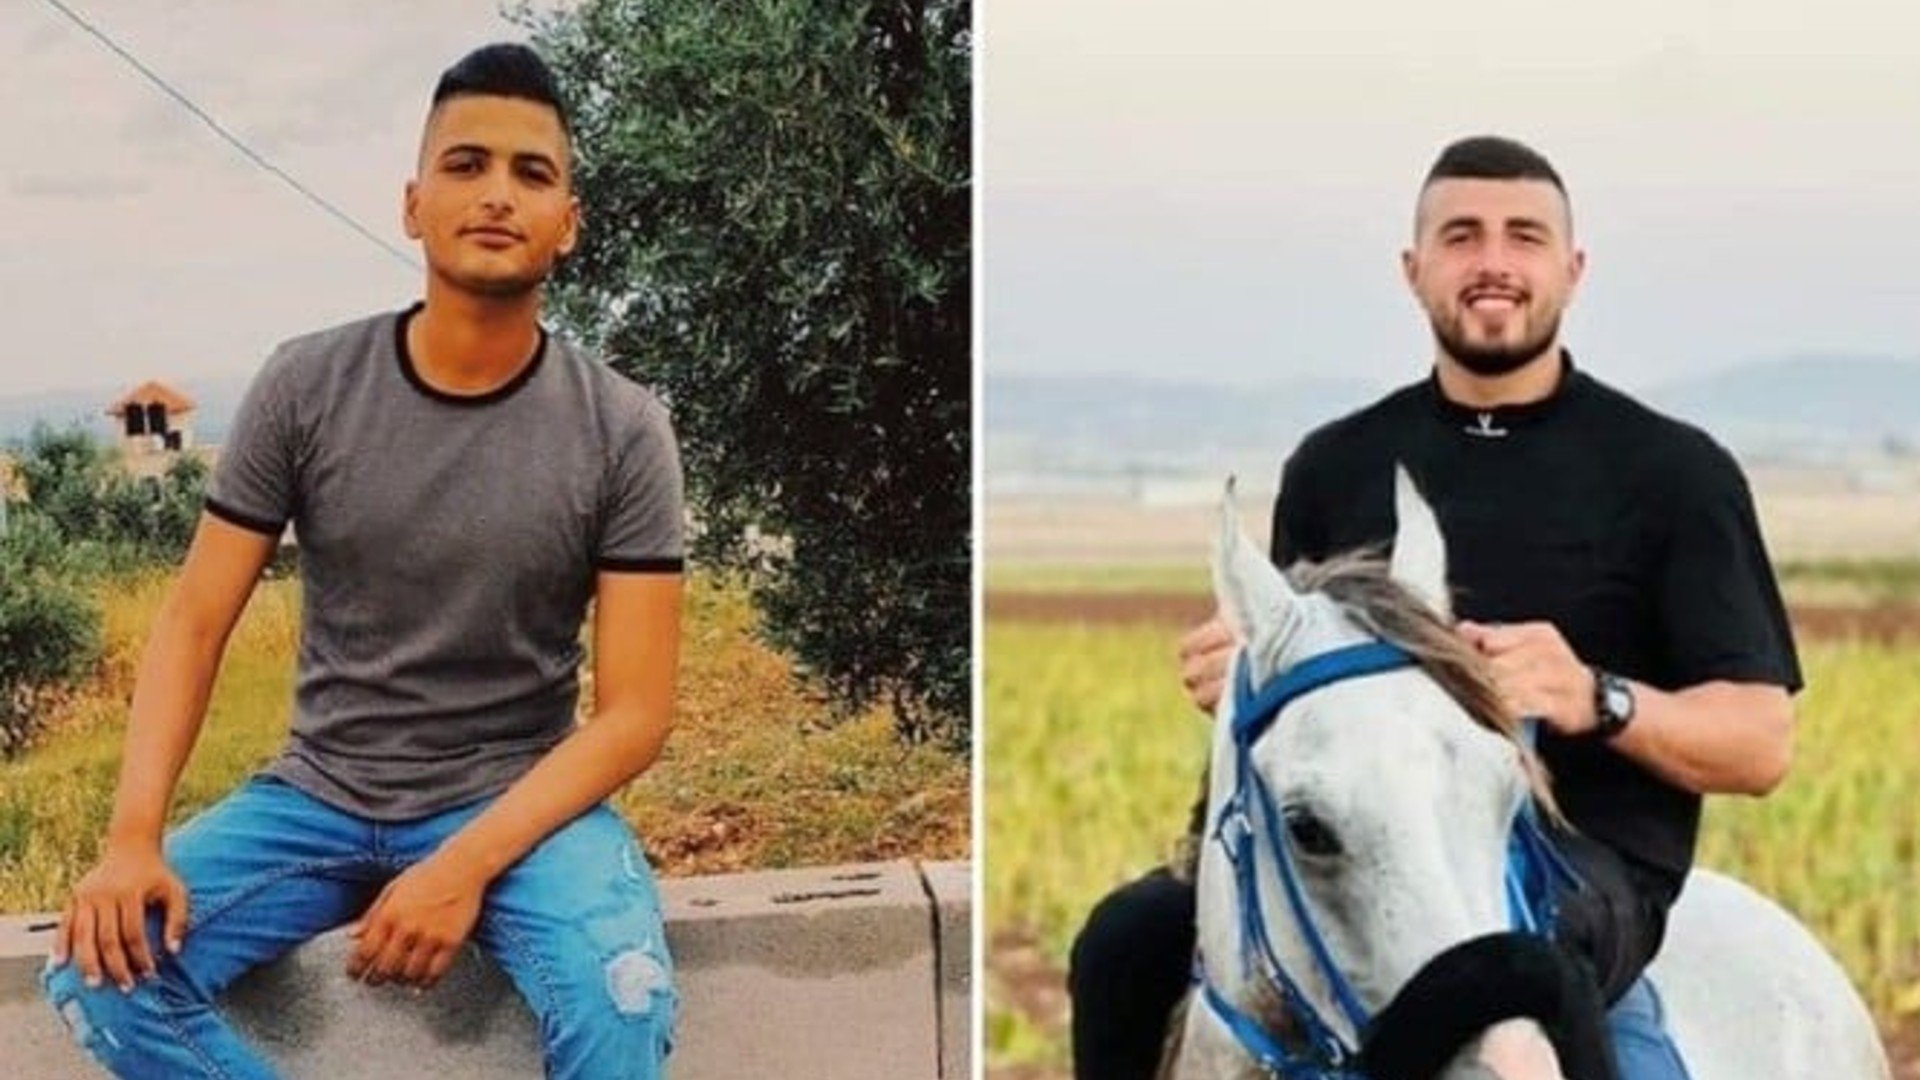 22 yaşındaki Muhammed Samar Haşiye ve 17 yaşındaki Fuad Muhammed Abed, 2023'te öldürülen ilk Filistinlilerdi.
İkili, işgal güçlerinin 2 Ocak’ta Cenin kentine bir evi yıkmak için düzenlediği baskın sırasında vurularak öldürüldü.
İkilinin öldürüldüklerinde silahlı olup olmadıkları ise net değildi.
